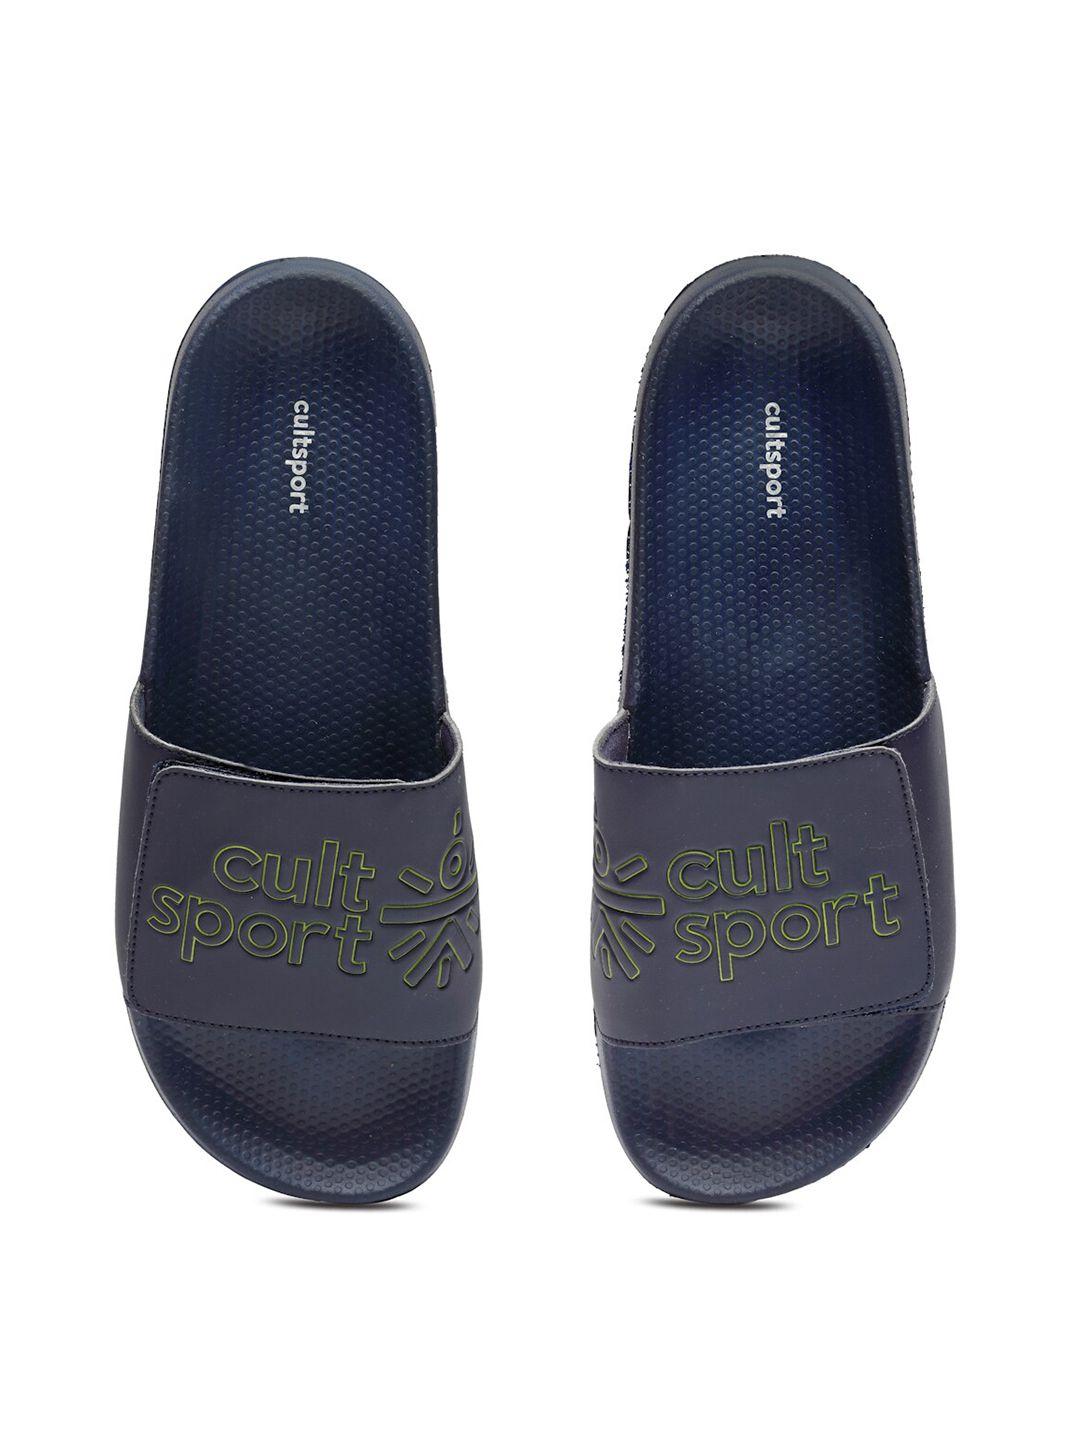 cultsport-men-navy-blue-flip-flops